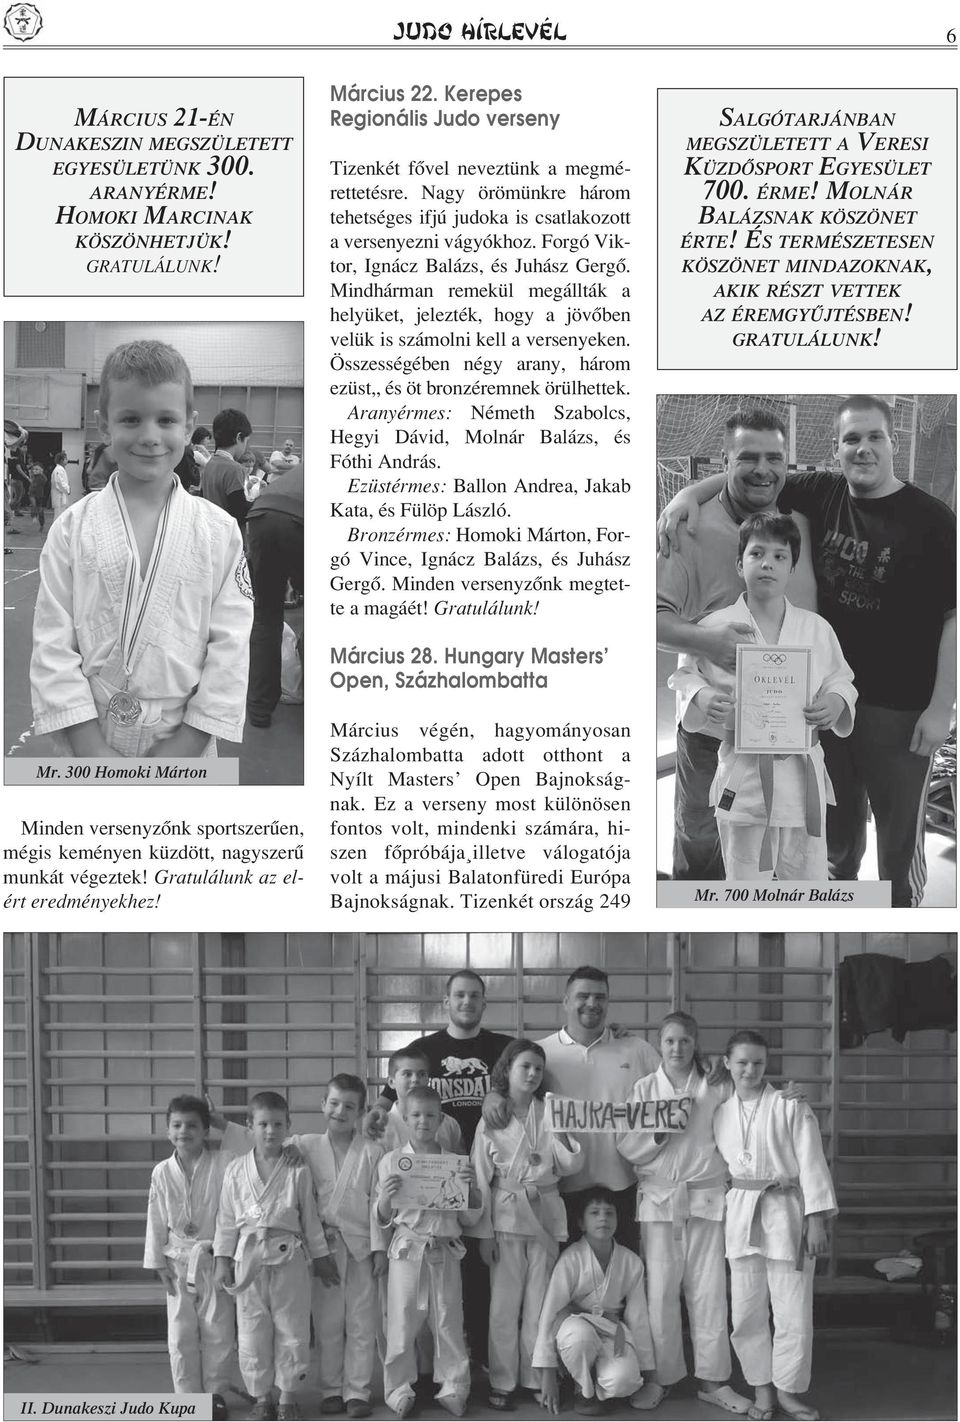 Kerepes Regionális Judo verseny Tizenkét fôvel neveztünk a megmérettetésre. Nagy örömünkre három tehetséges ifjú judoka is csatlakozott a versenyezni vágyókhoz.